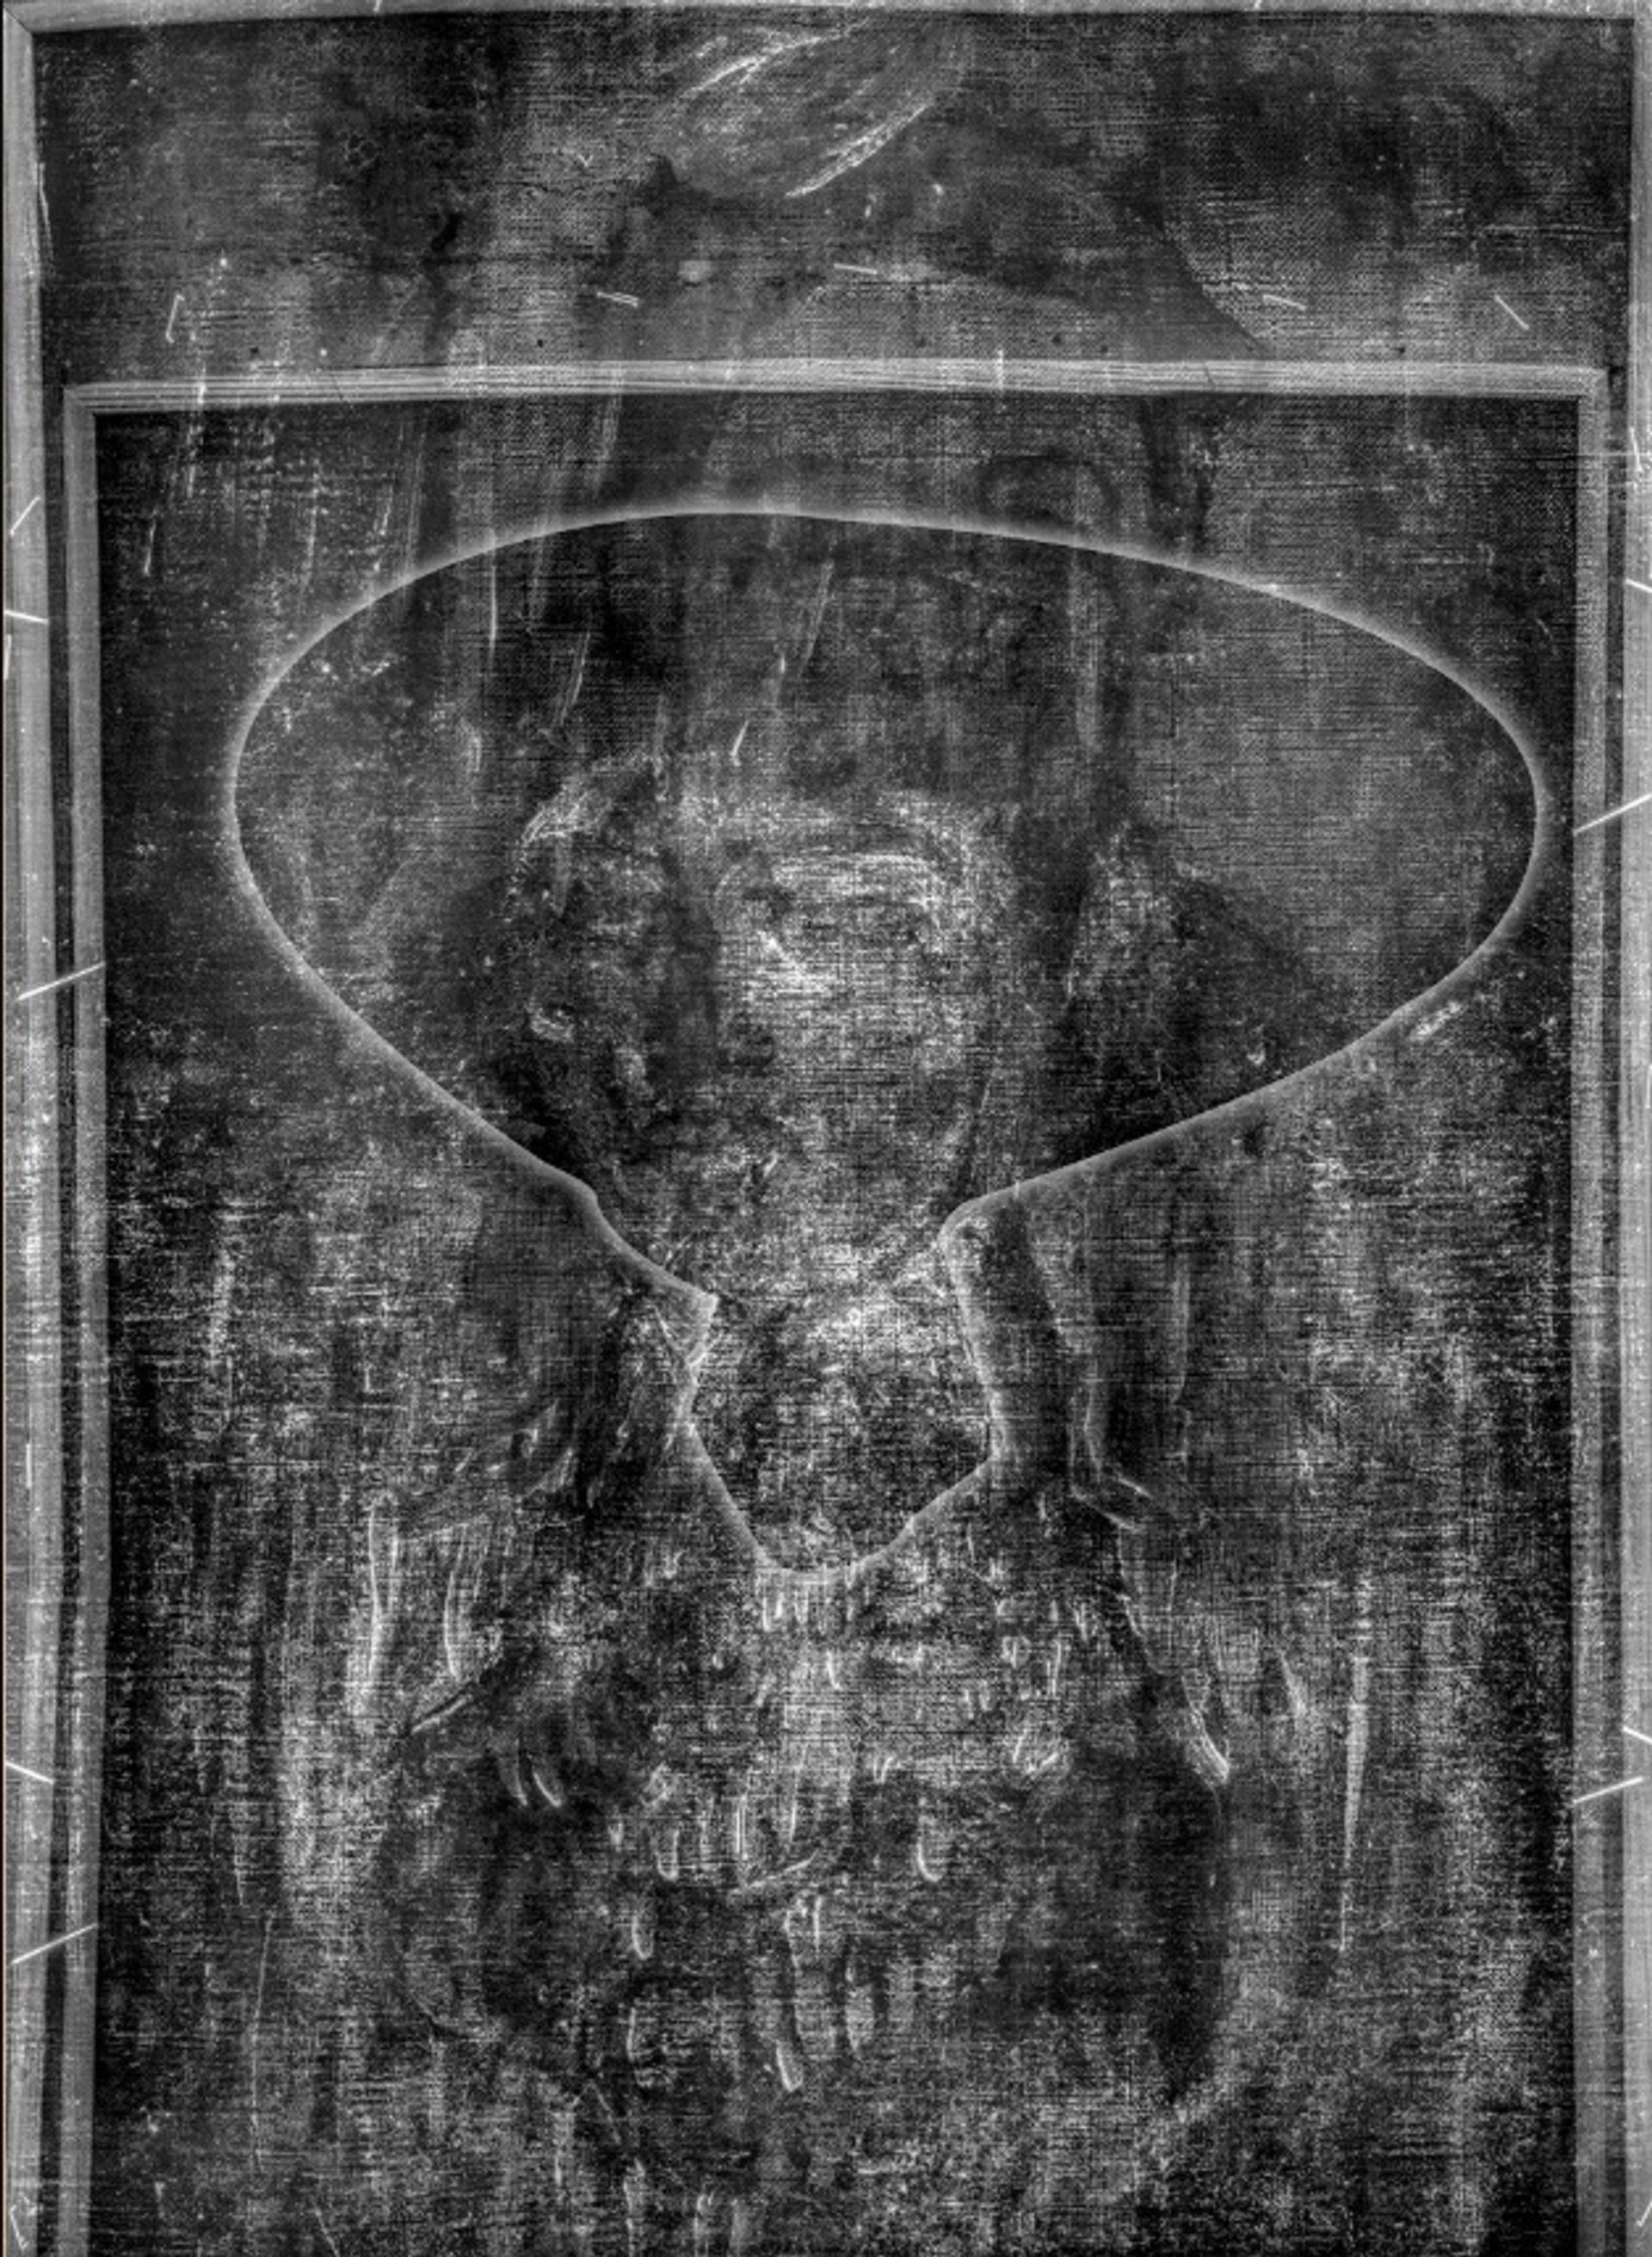 צילום רנטגן שעבר 'עירום עם כובע' של מודיליאני (1908) חשף צללית של סקיצה קודמת

תמונות מאת רון פינקו, באדיבות מוזיאון הכט